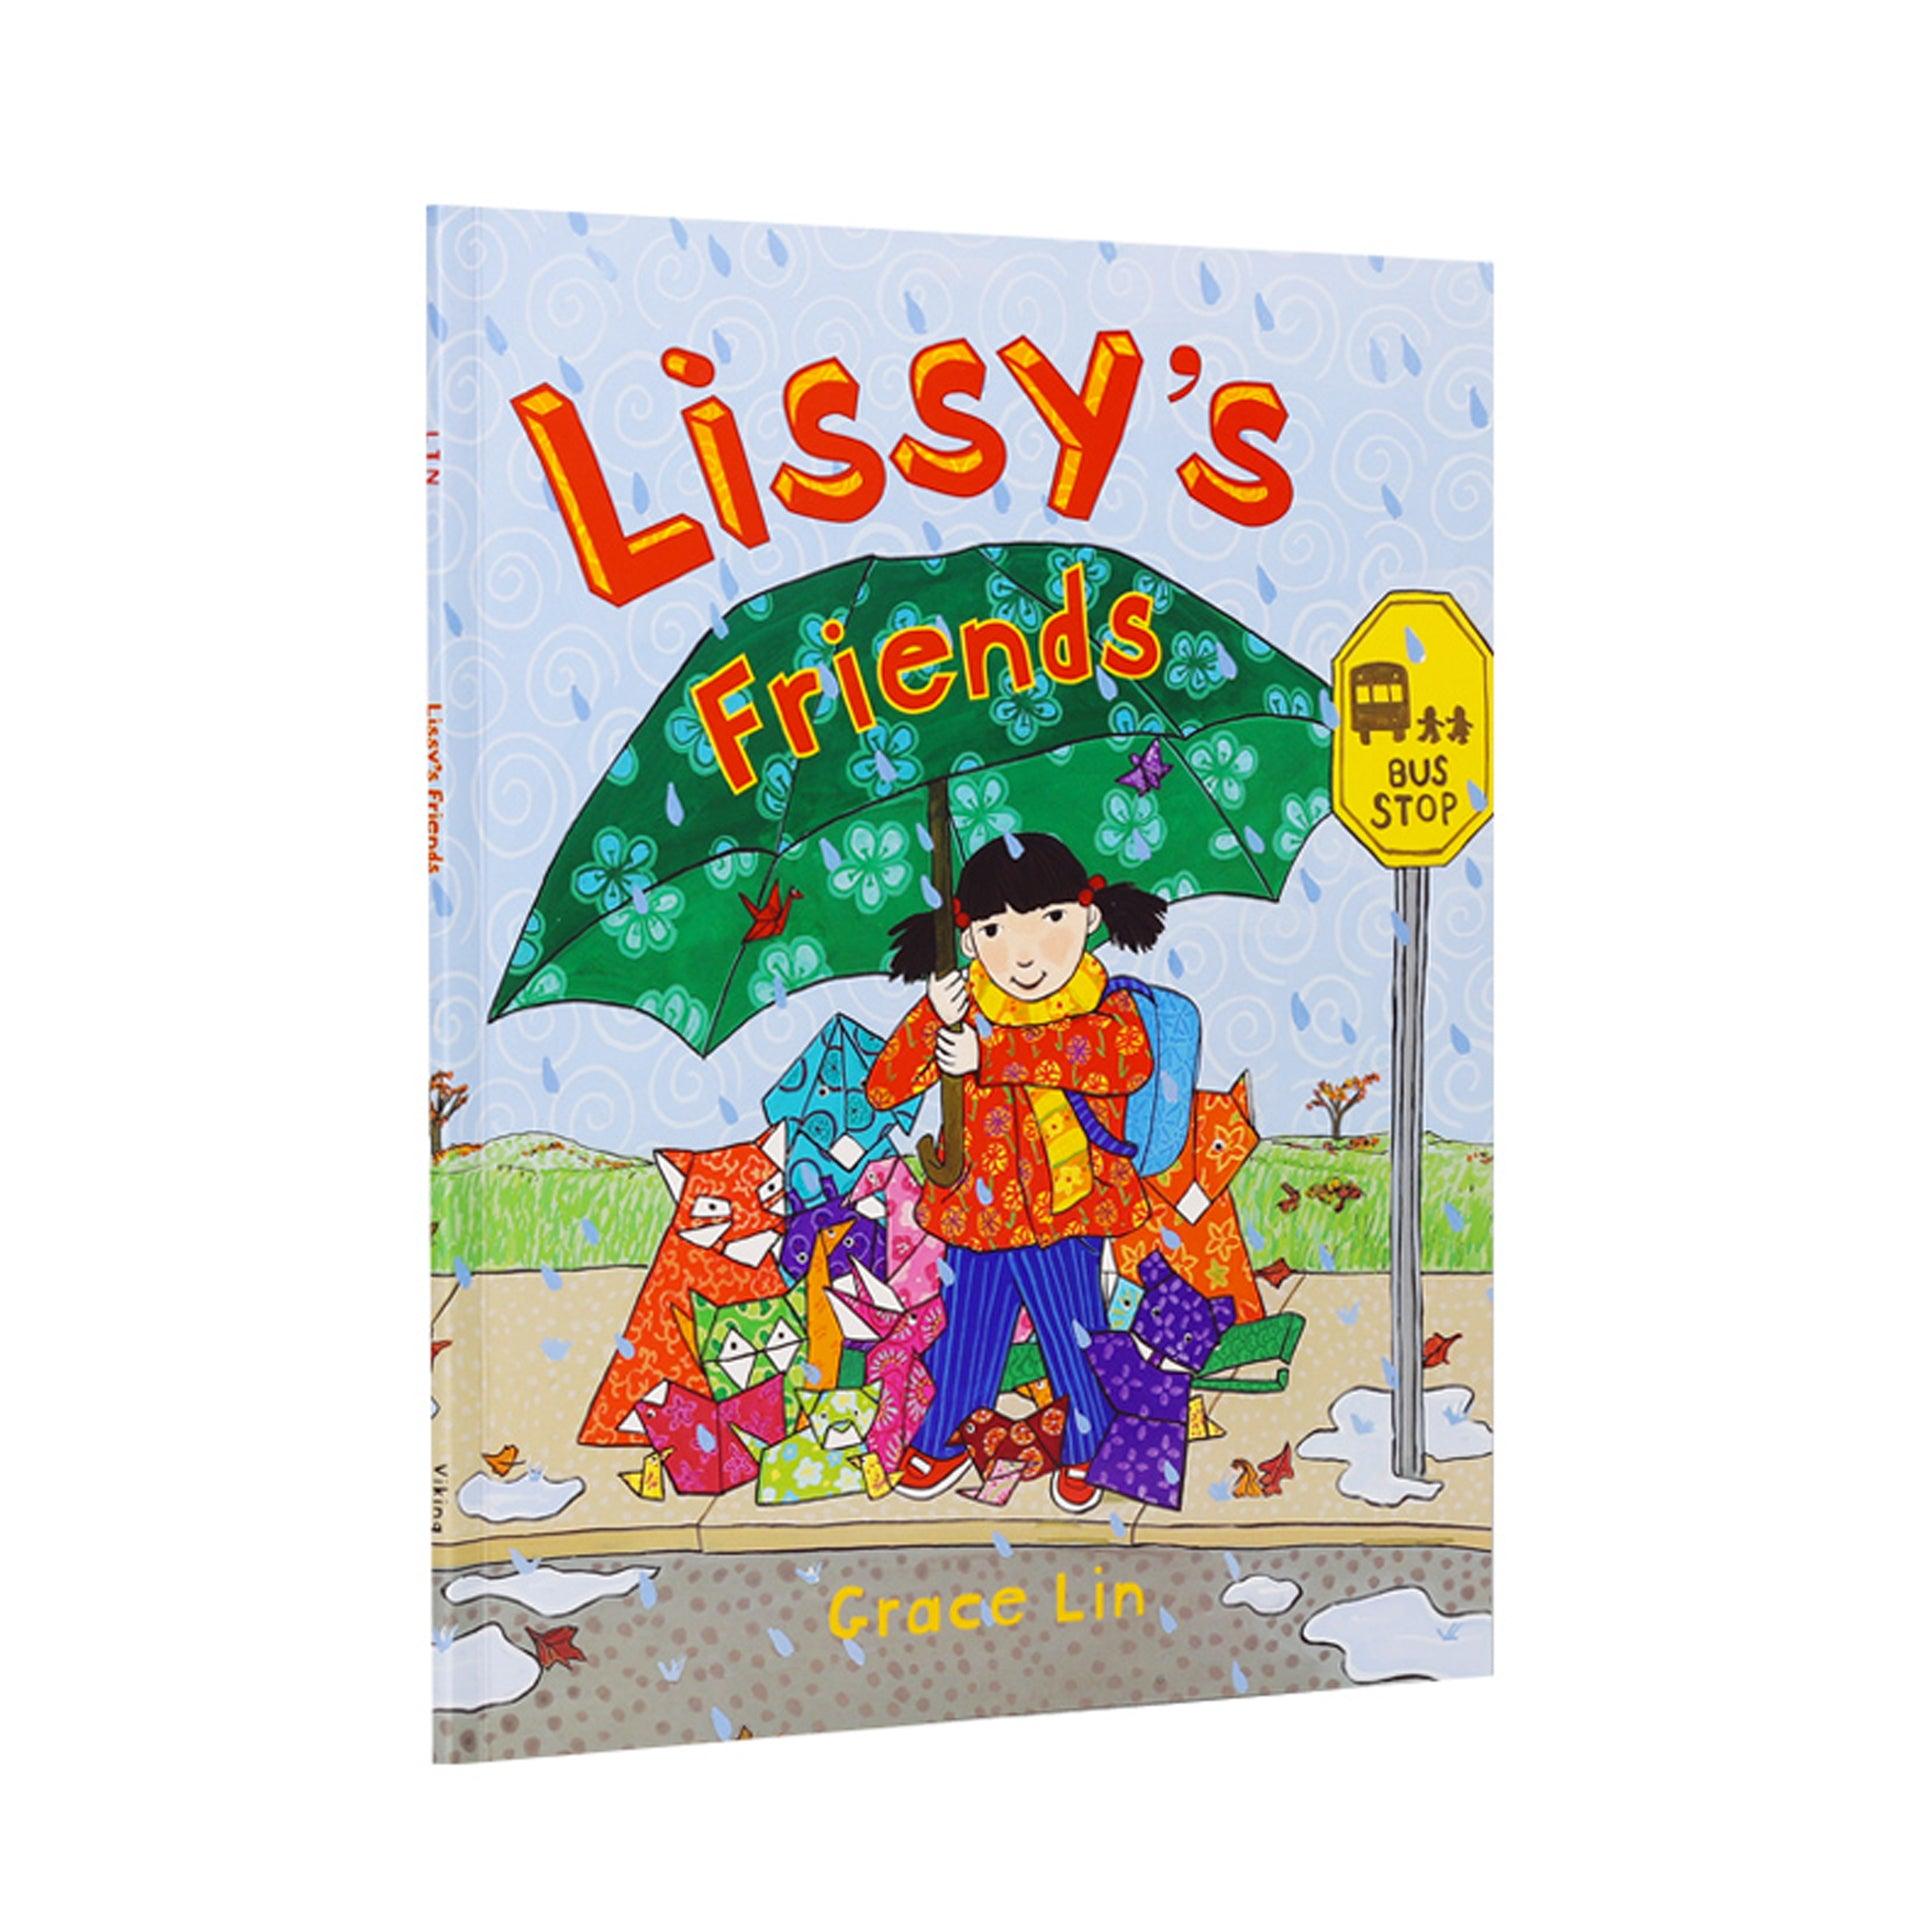 [點讀] Lissy's friends 莉斯的朋友們 英文生活繪本故事 (適合3-6歲)｜吳敏蘭有聲書單 - Little Llama 小羊駝雜貨店